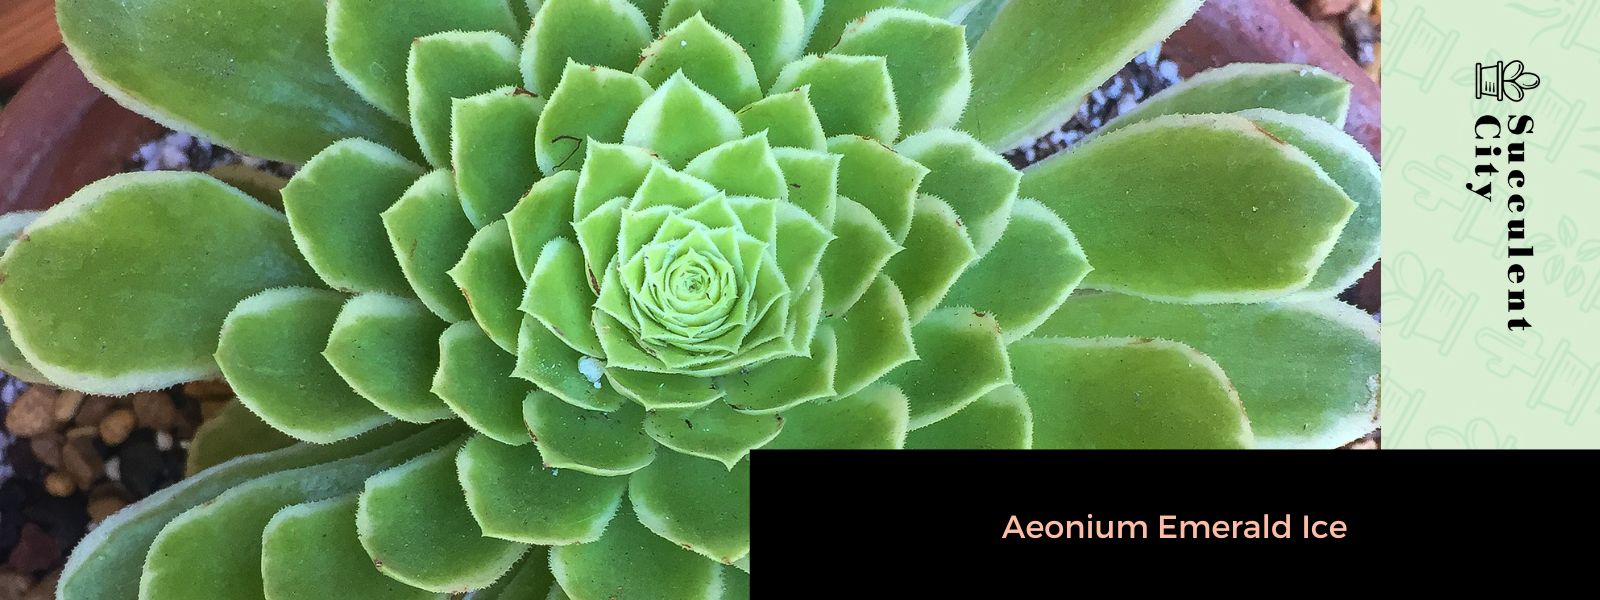 Aeonium Emerald Ice (El loto verde del género Aeonium)